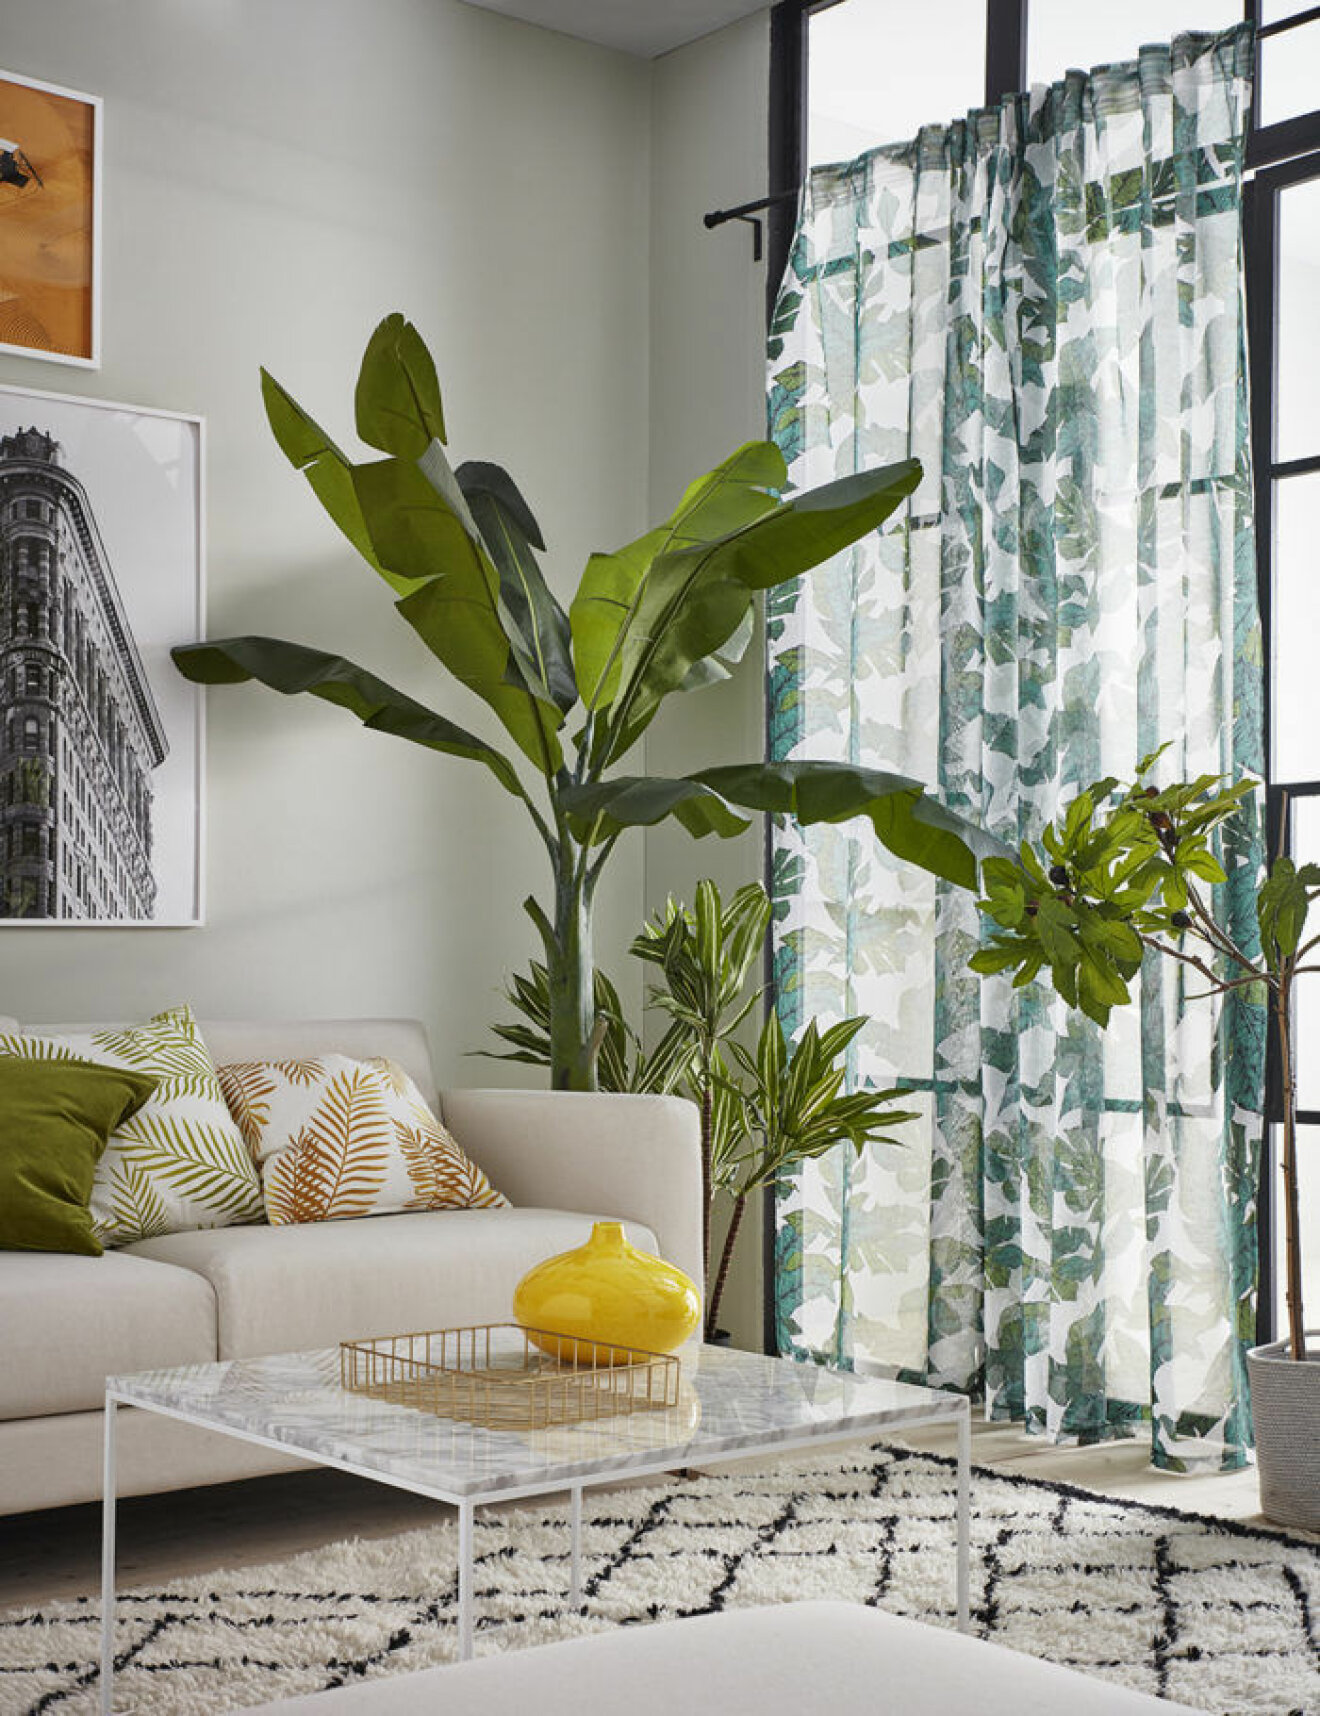 Vardagsrum med bananplanta och fikonträd. Mönstrad matta och gardiner. Jotex vår och sommar 2018. 